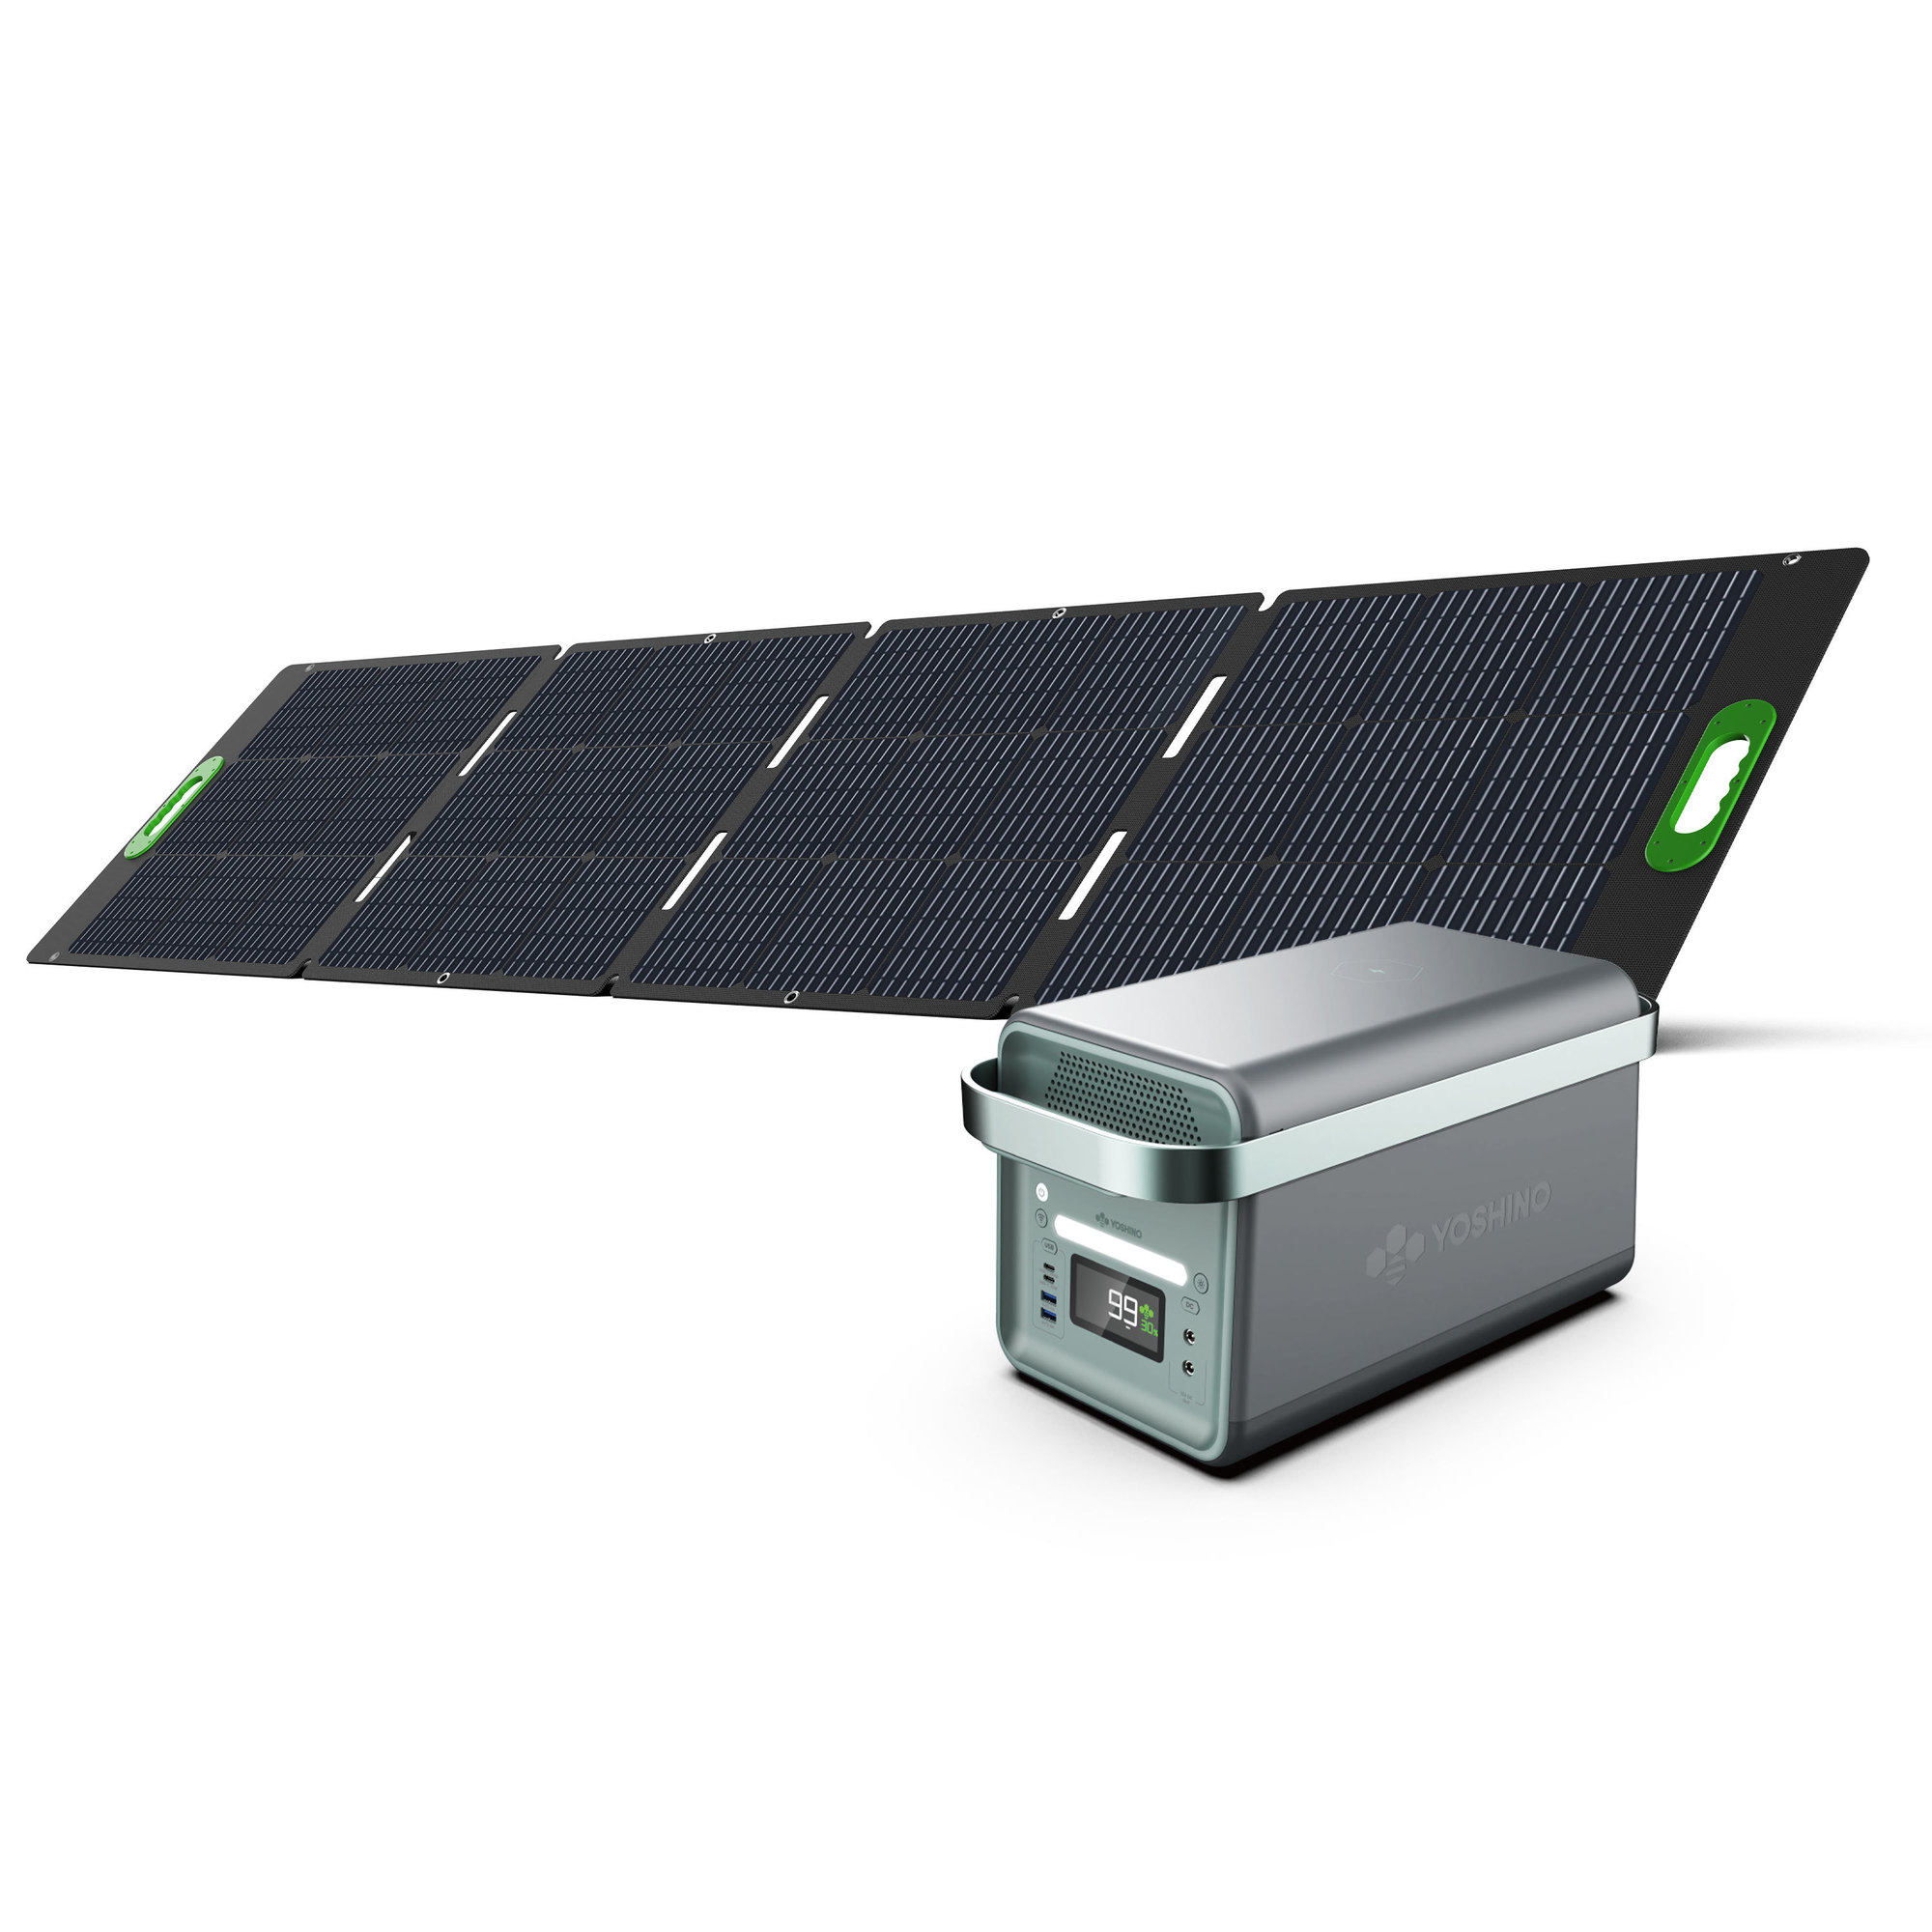 Yoshino, SS Portable Solar Generator 2000W + 200W Panel, Running Watts 2000, Surge Watts 3000, Model K20SP21